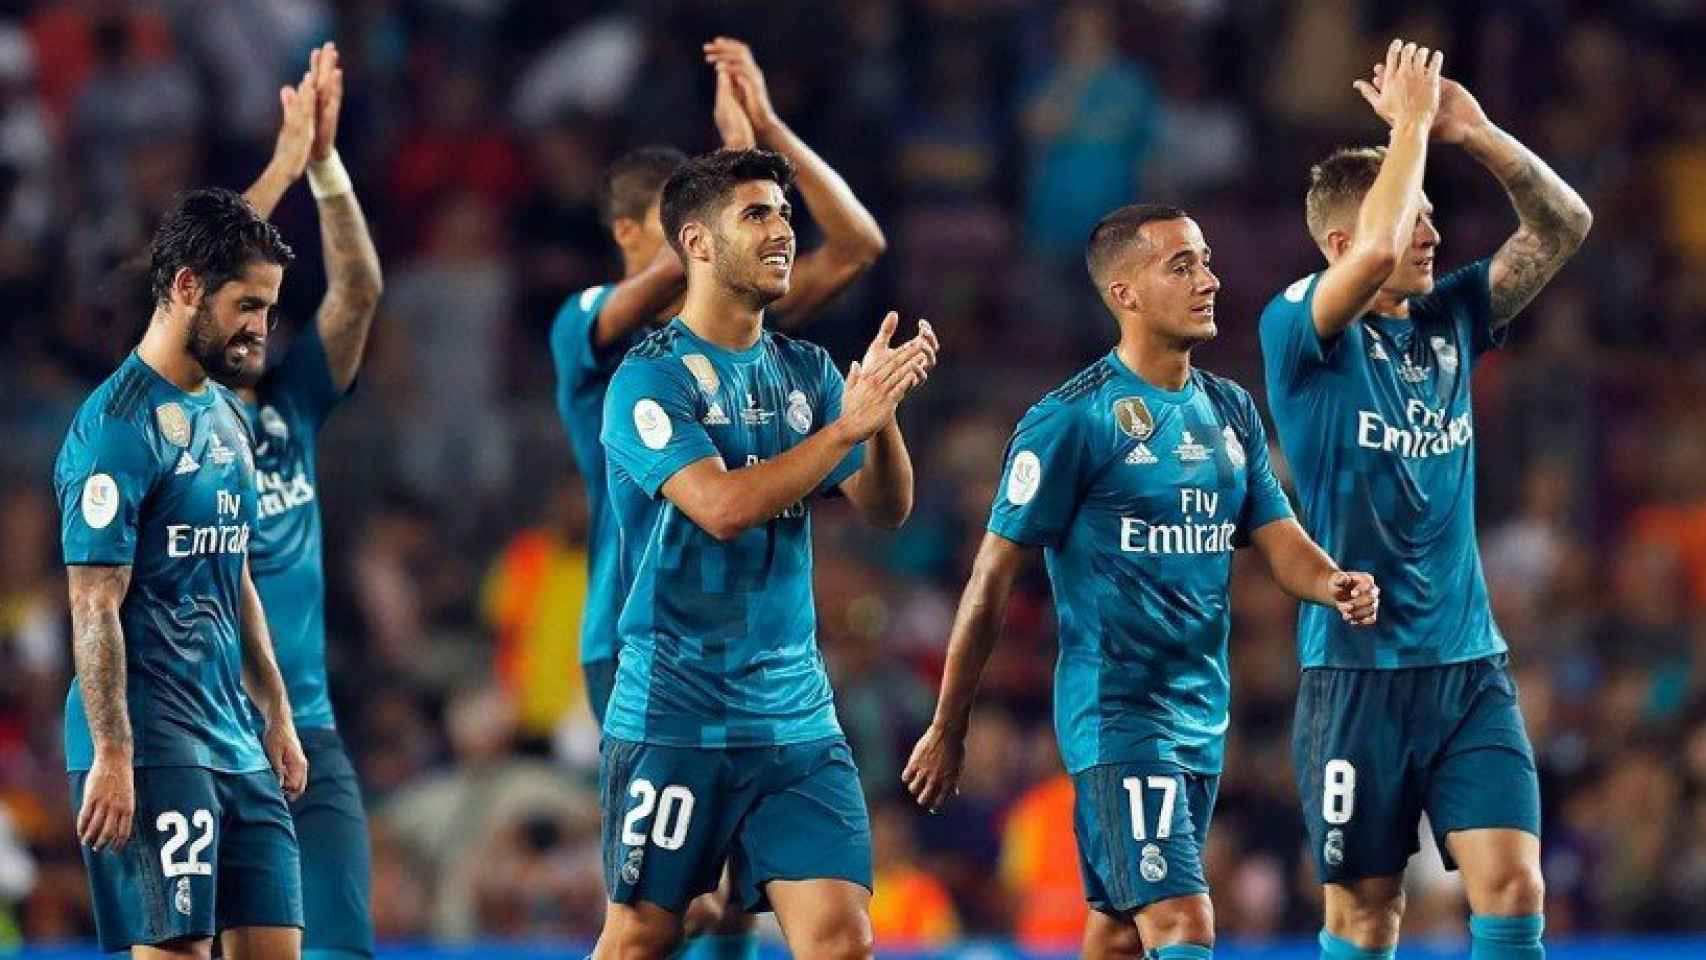 El Madrid aplaudiendo a su afición